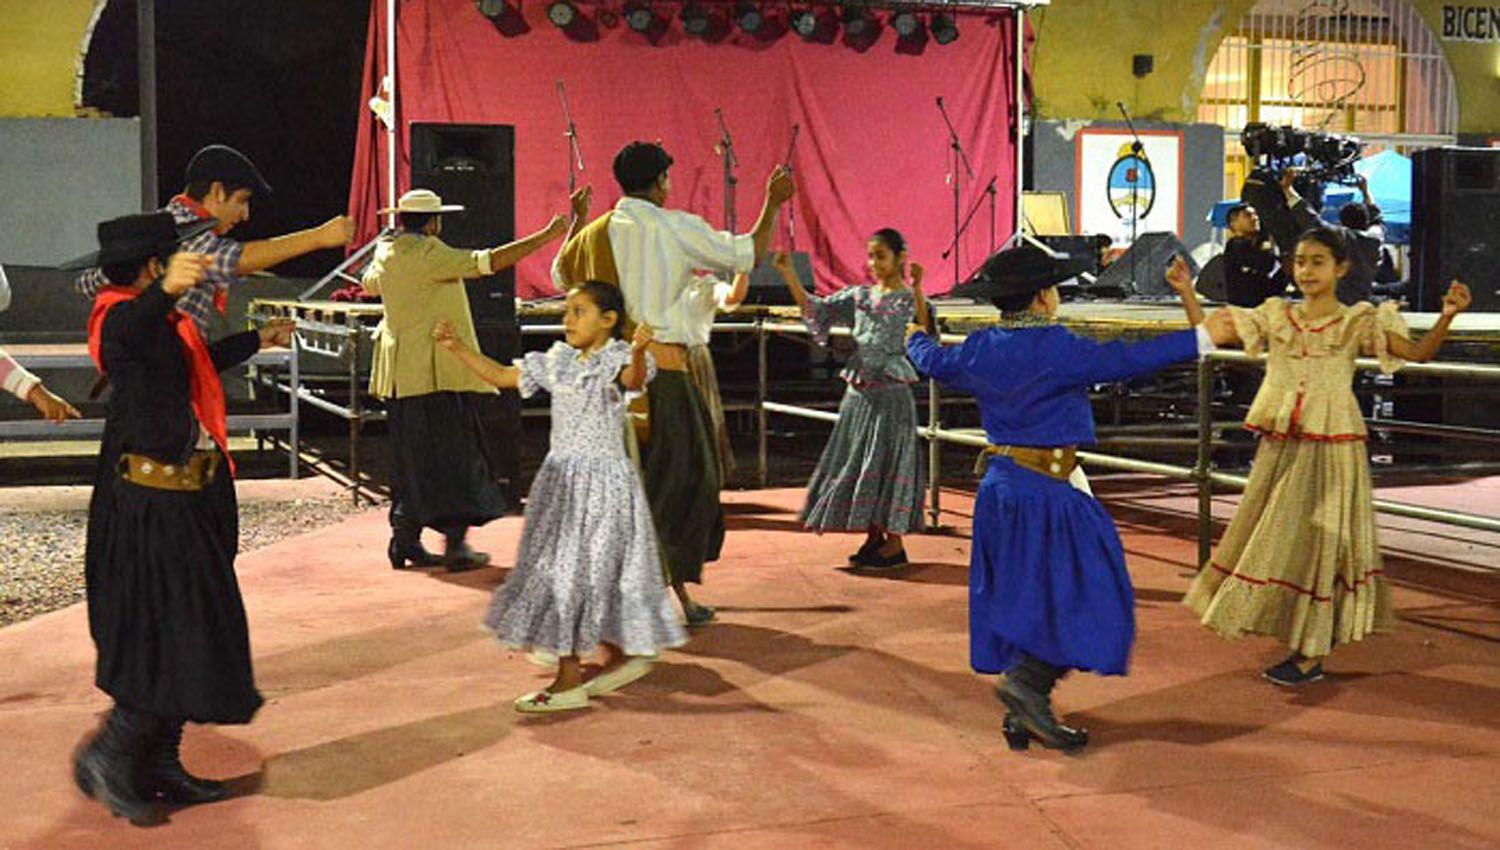 Dictan taller de danzas folcloacutericas y un curso de modelaje y formacioacuten integral